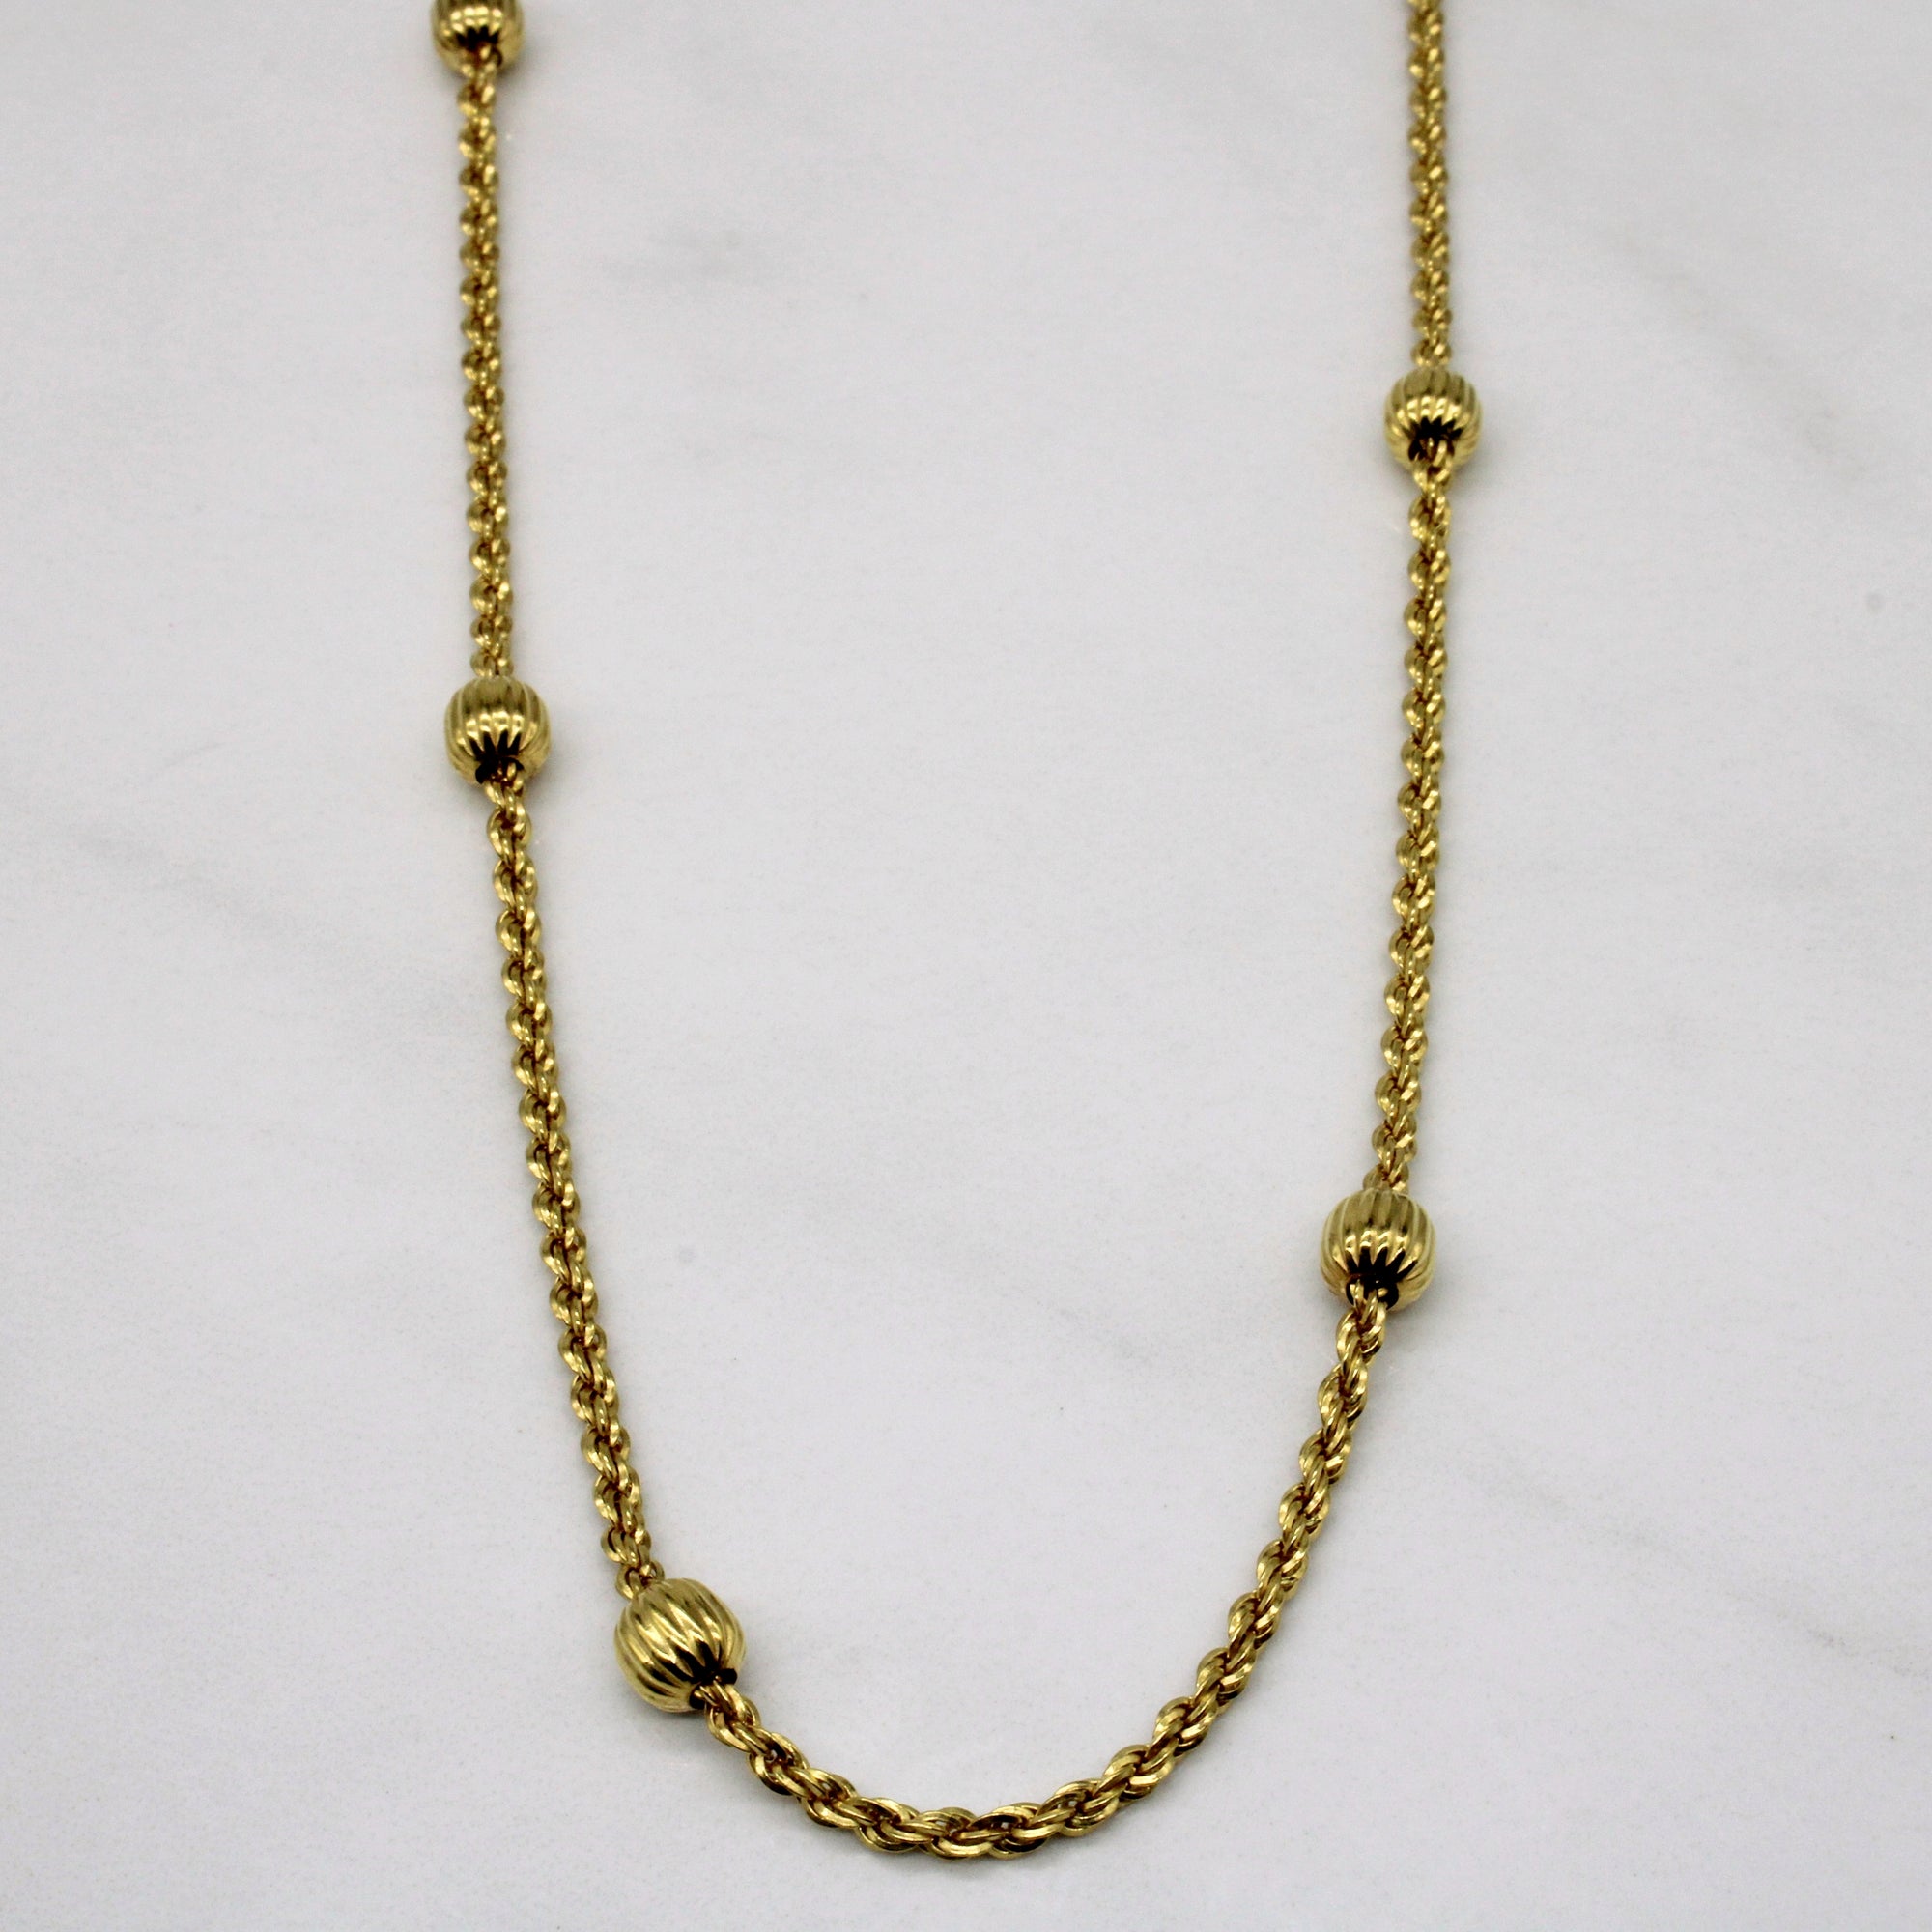 10k Yellow Gold Rope & Ball Chain | 19